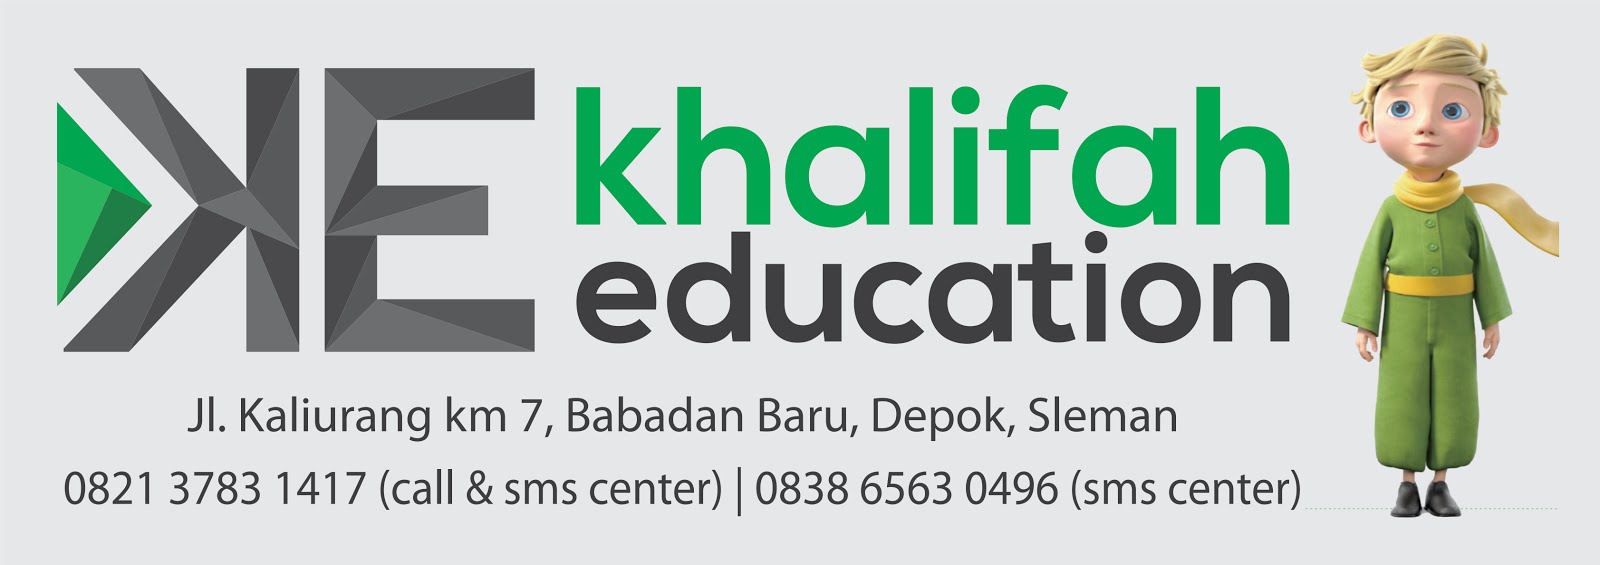 Les Privat Yogyakarta - Khalifah Education